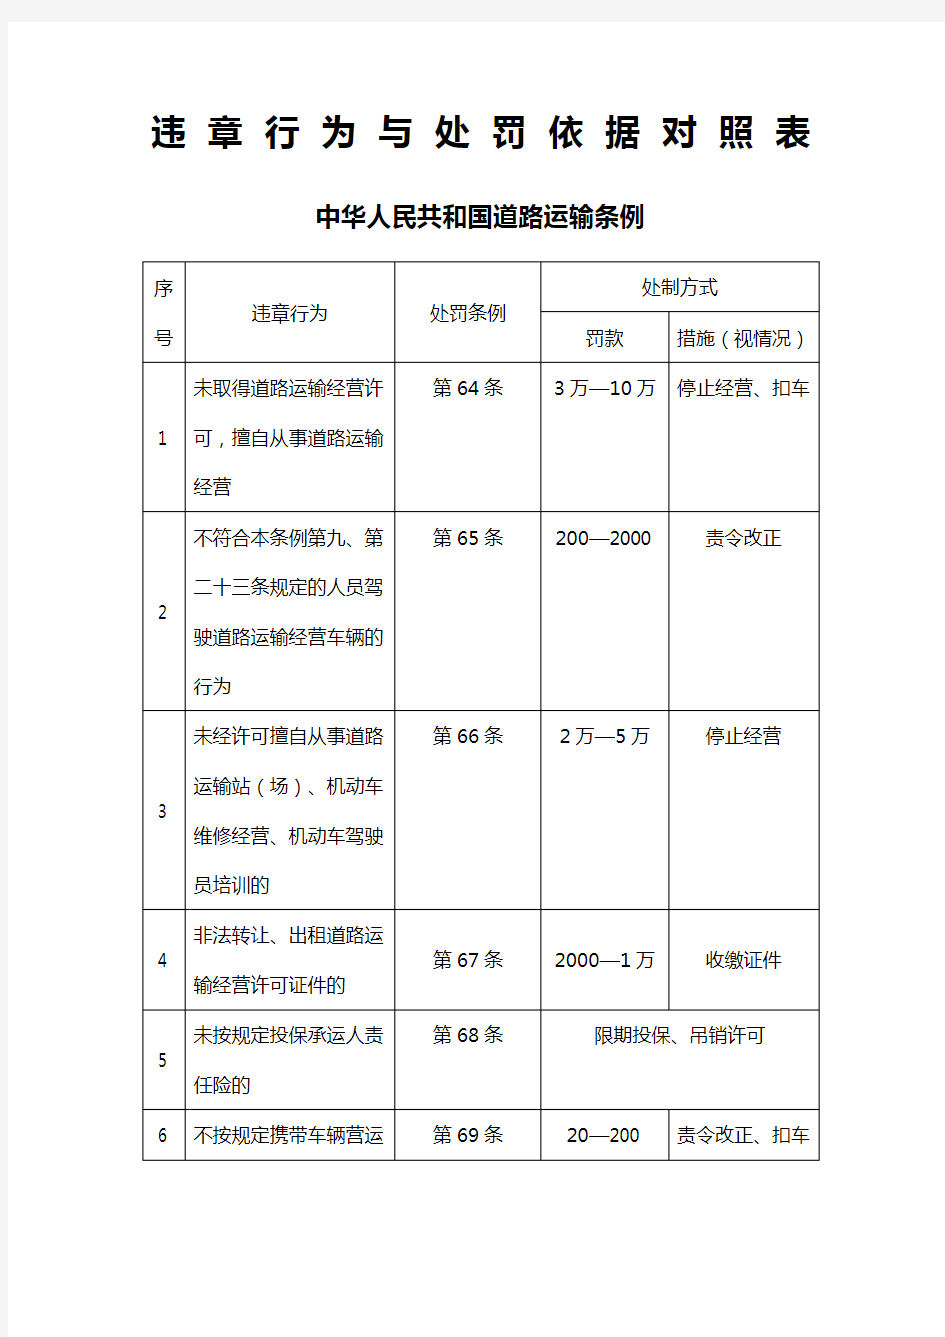 中华人民共和国道路运输条例违章行为与处罚依据对照表